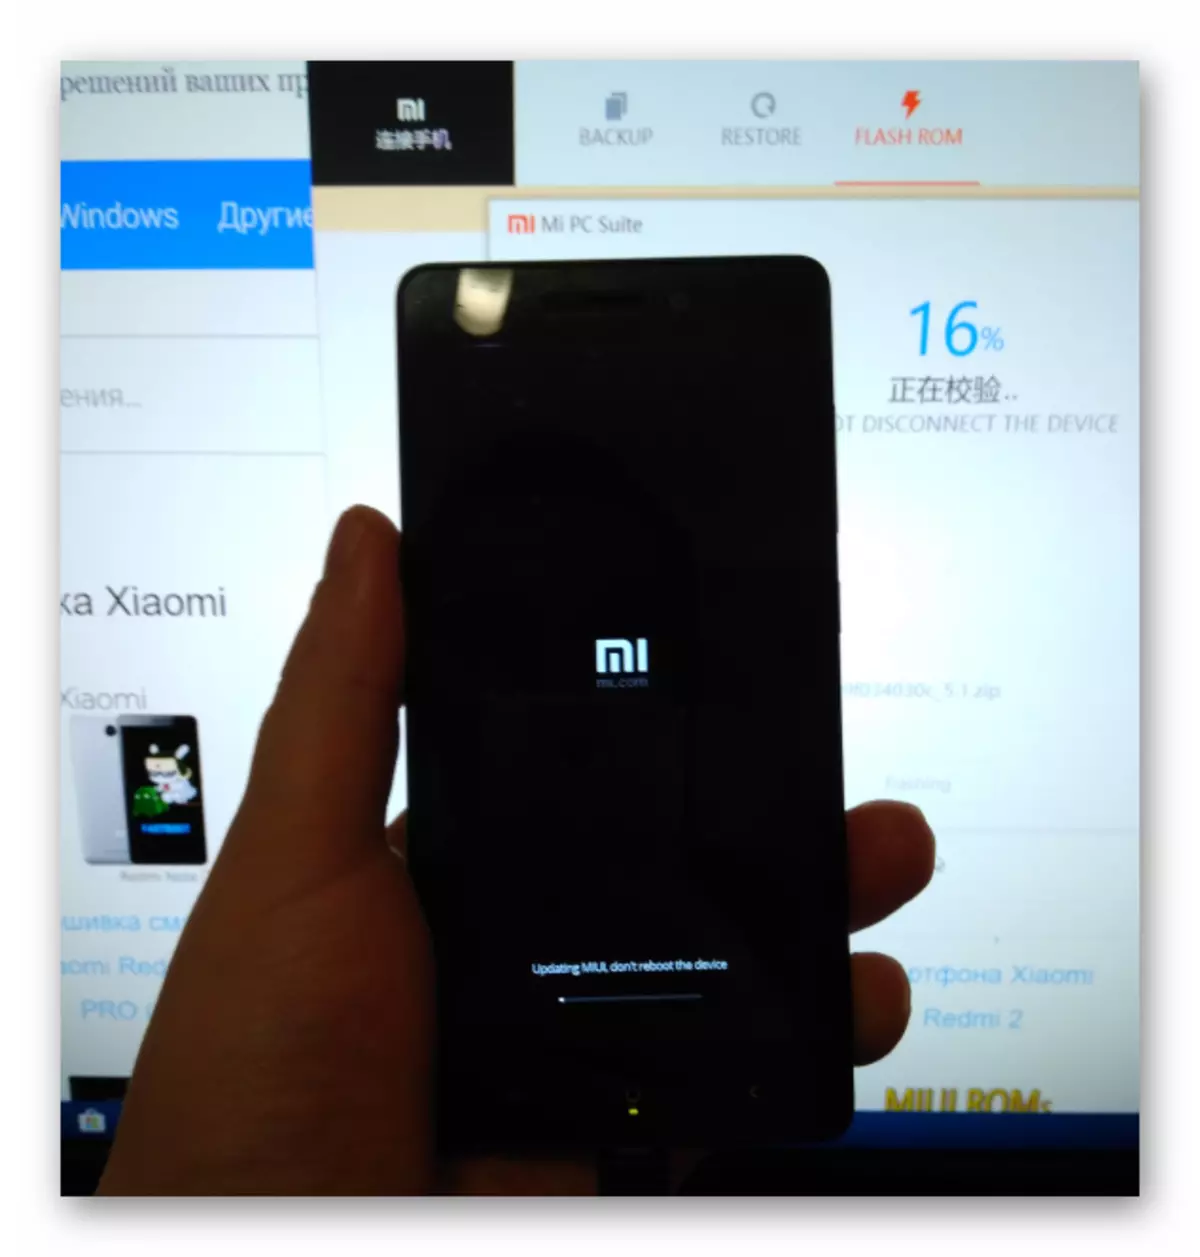 സ്മാർട്ട്ഫോൺ സ്ക്രീനിൽ മിഫോണസിറ്റേറിയൻ പ്രകടന സൂചകം വഴി ഫേംവെയർ Xiaomi Redmi 3 (PRO) ഫേംവെയർ